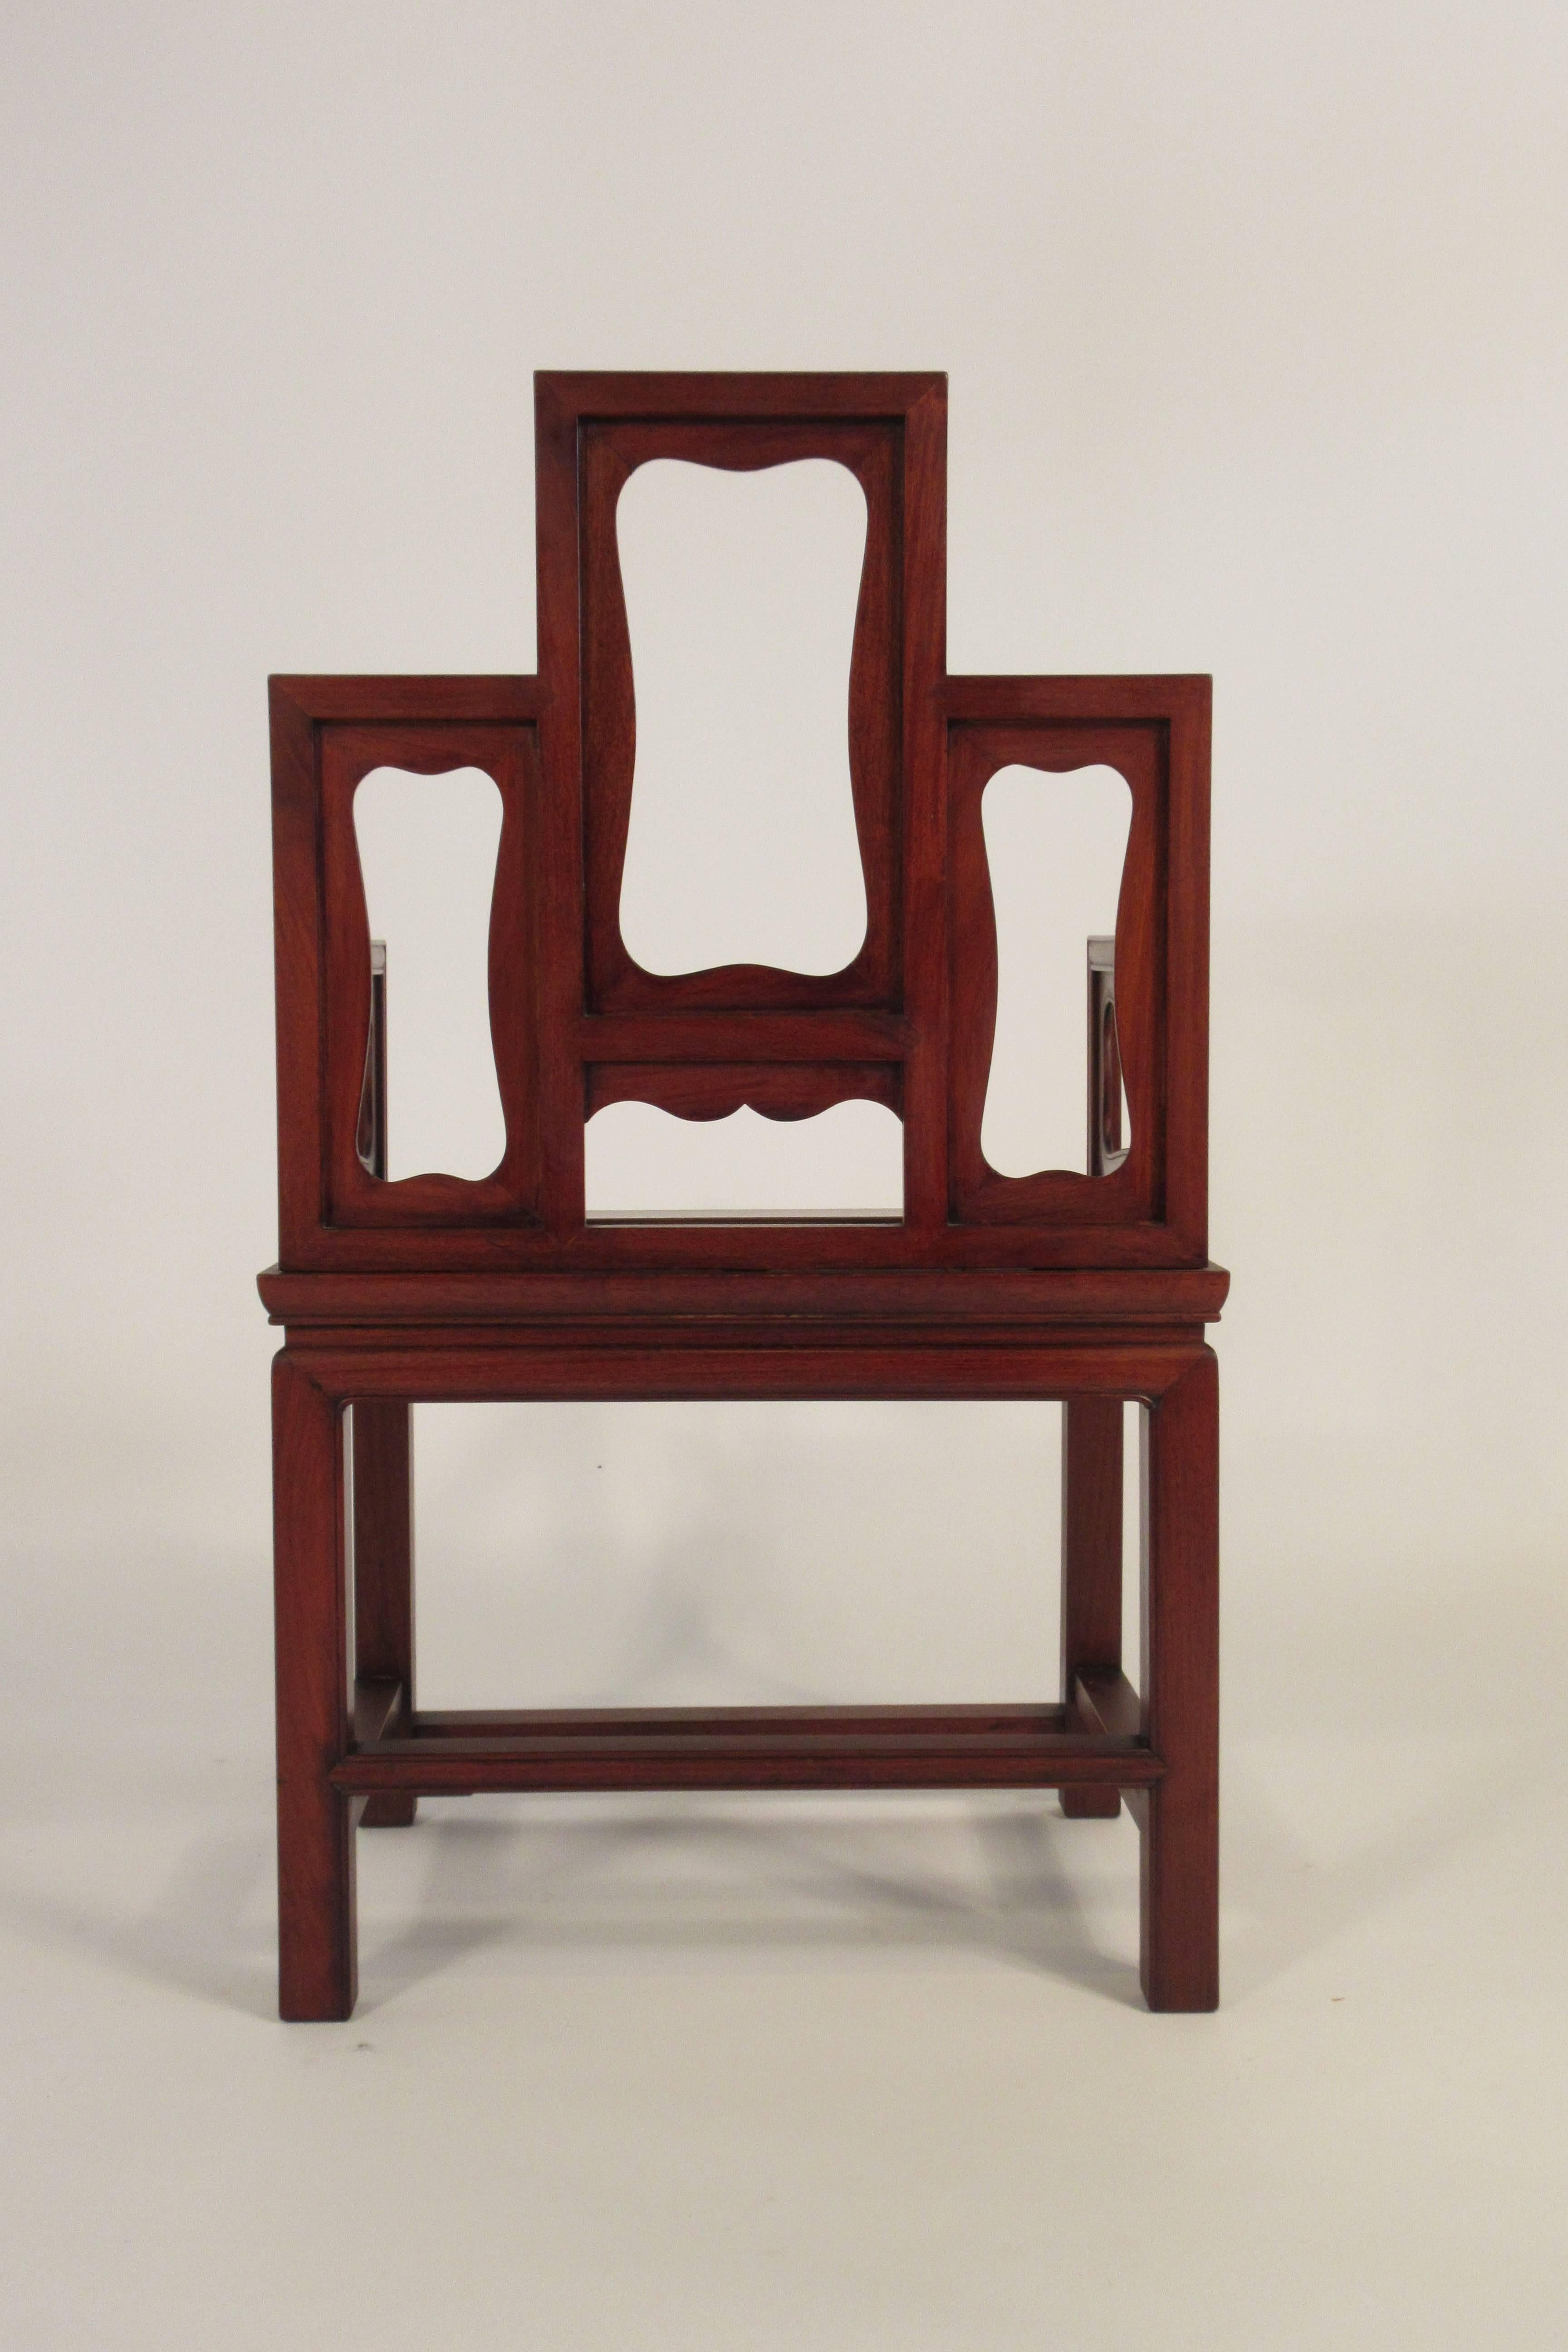 1960s Asian throne chair.